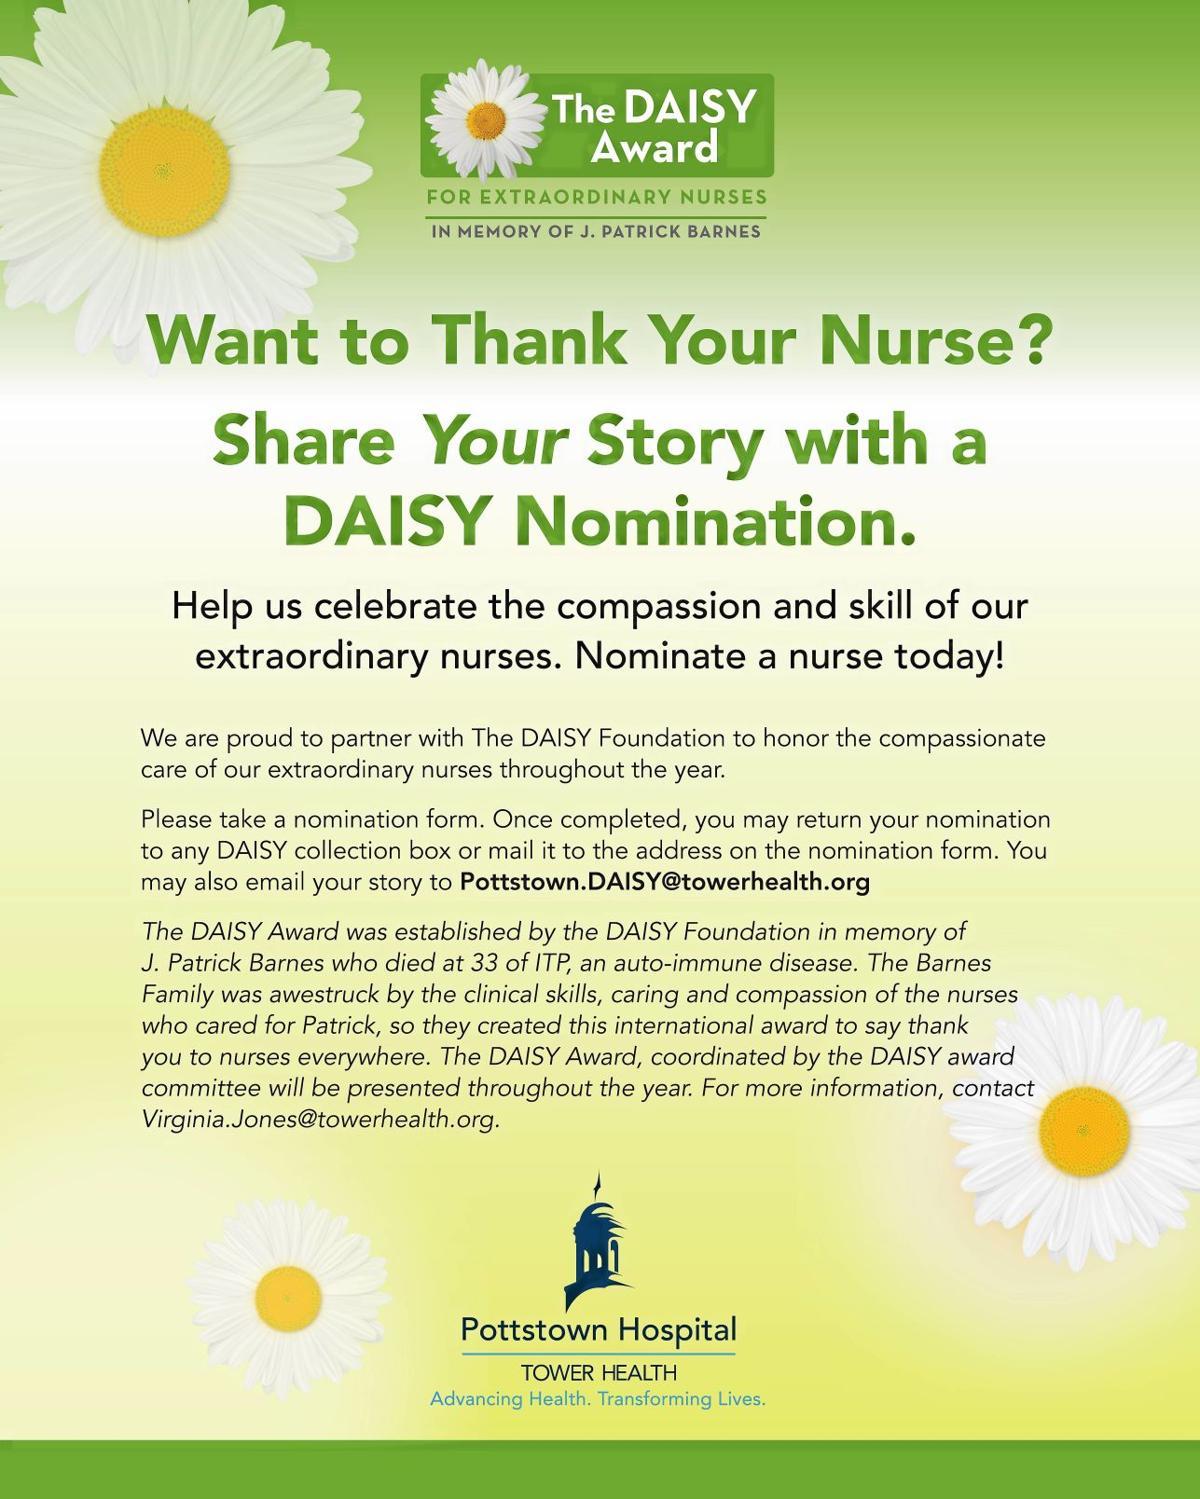 Daisy Award Logo - Pottstown Hospital implementing DAISY Award to recognize nurses ...